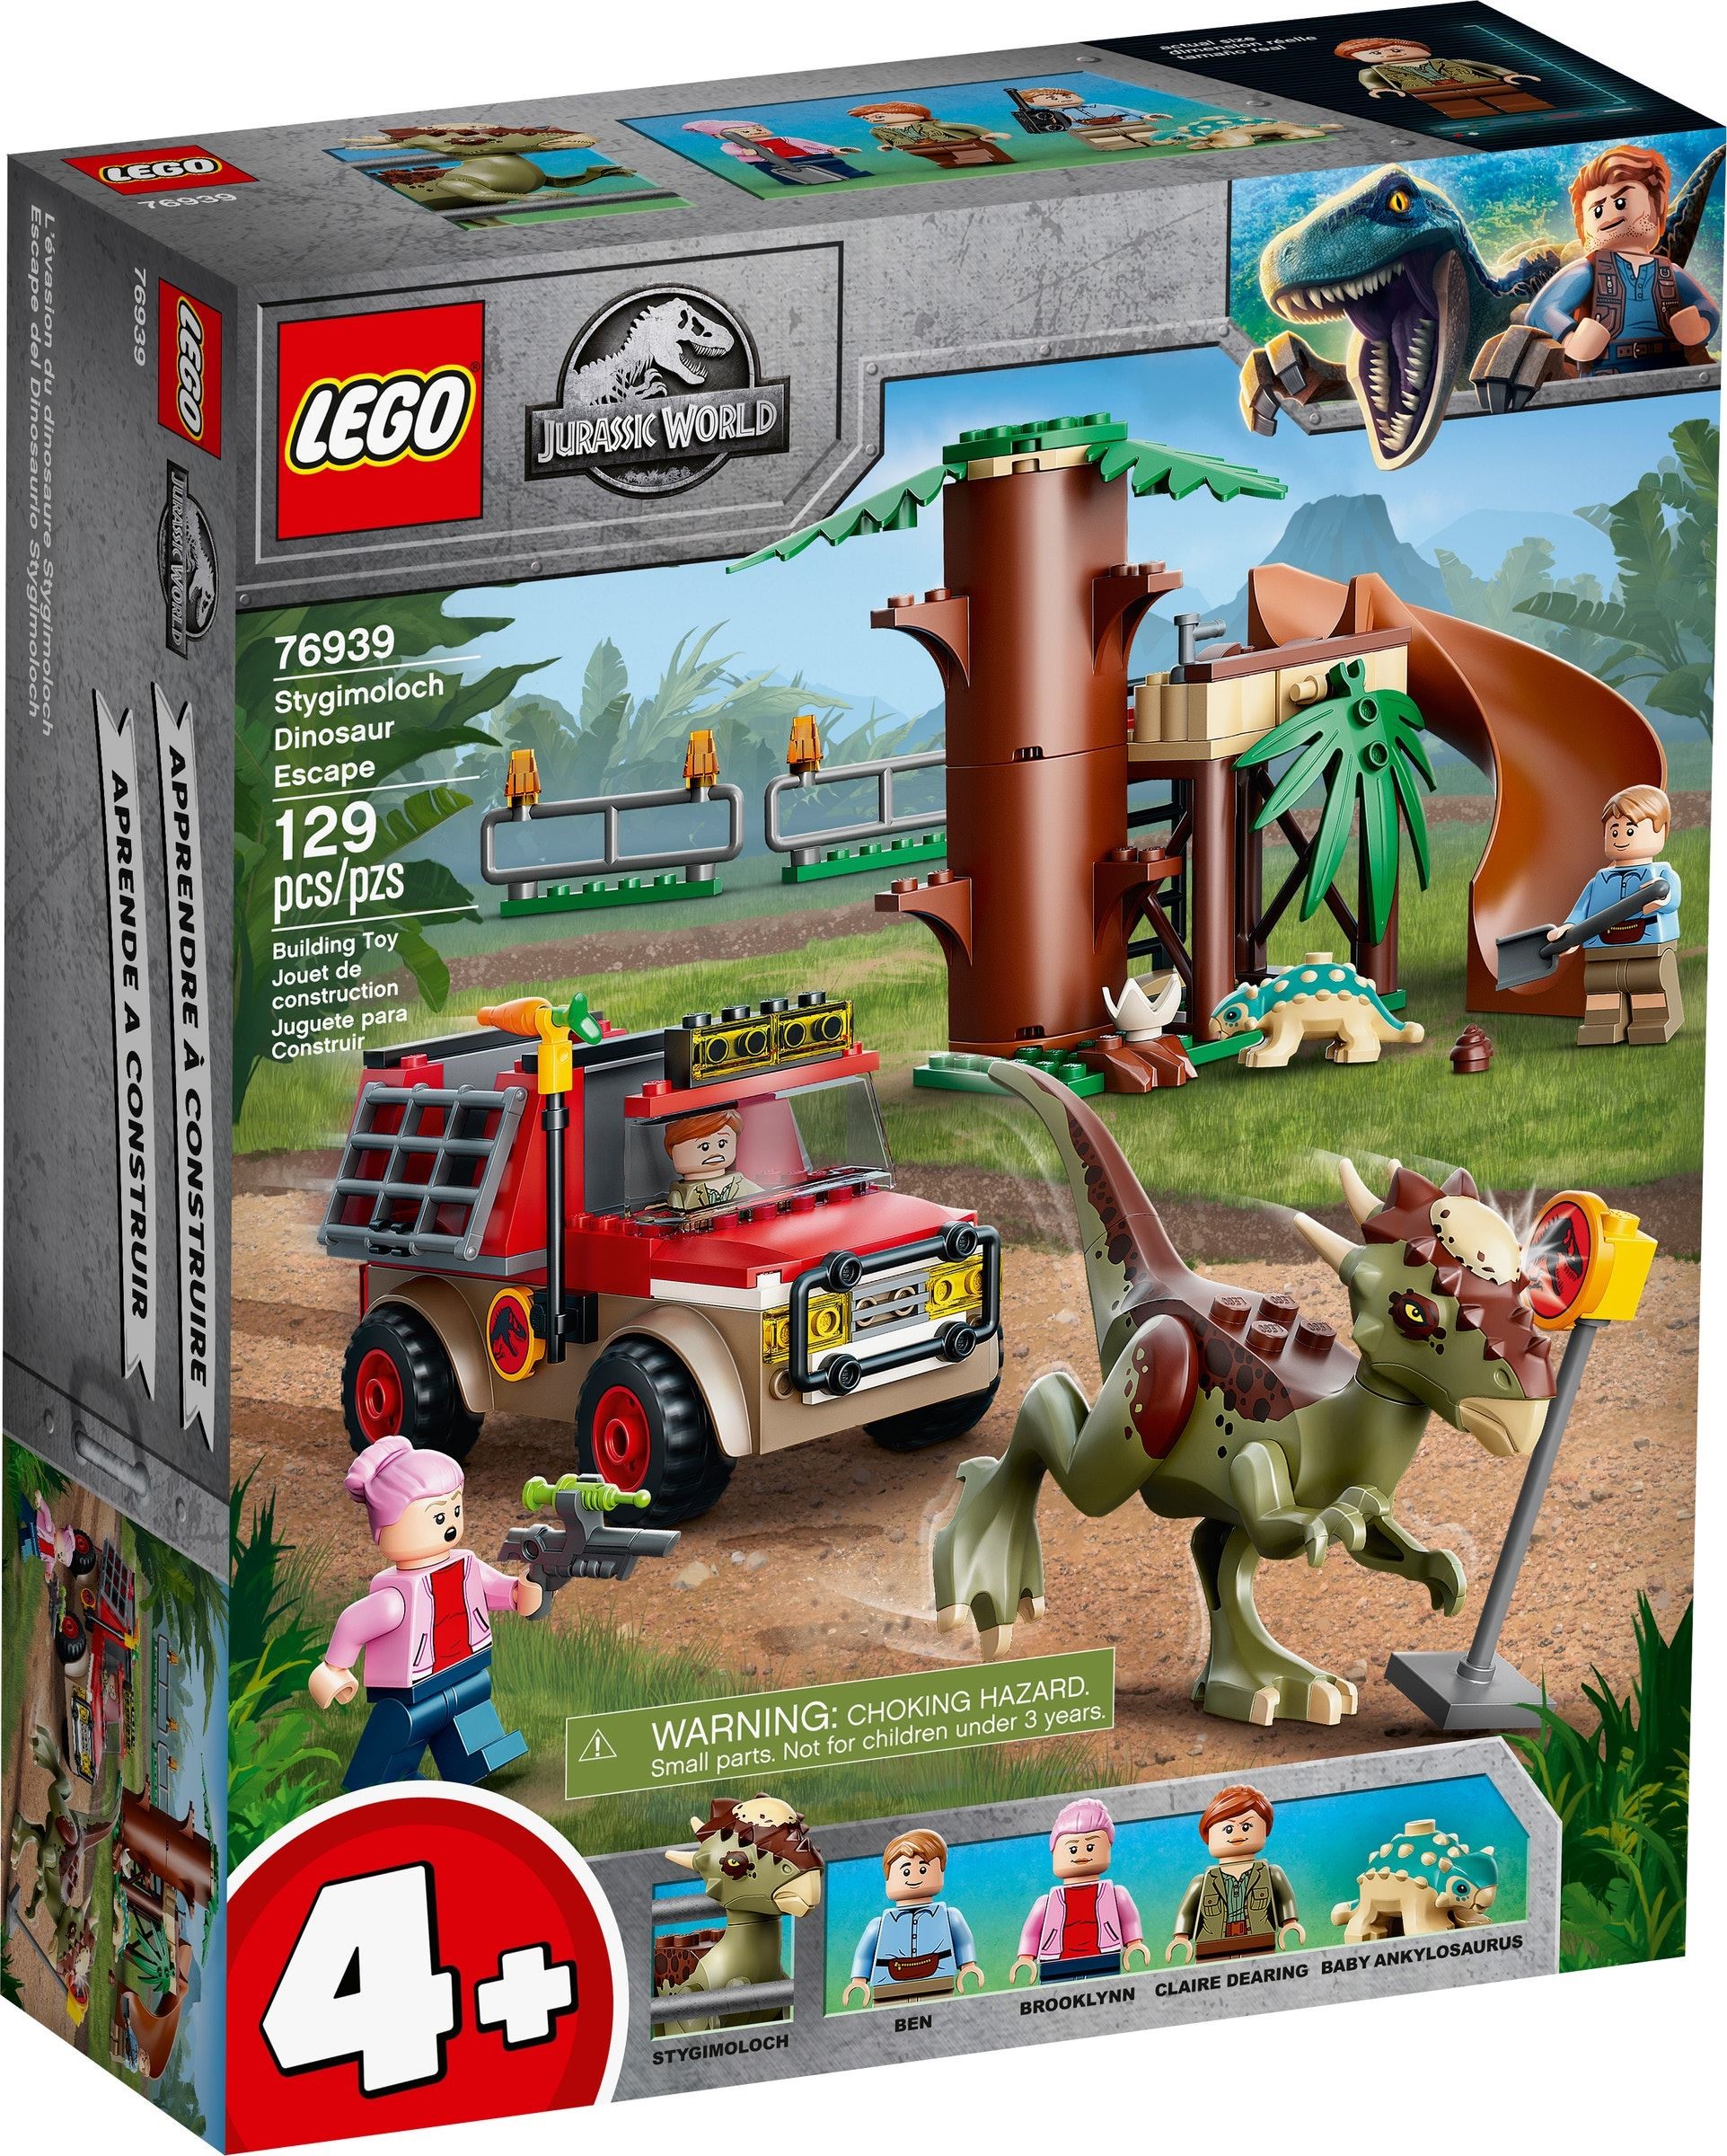 21年9月発売レゴ ジュラシック ワールド新製品情報 みんな大好き恐竜シリーズ スタッズ レゴの楽しさを伝えるwebメディア